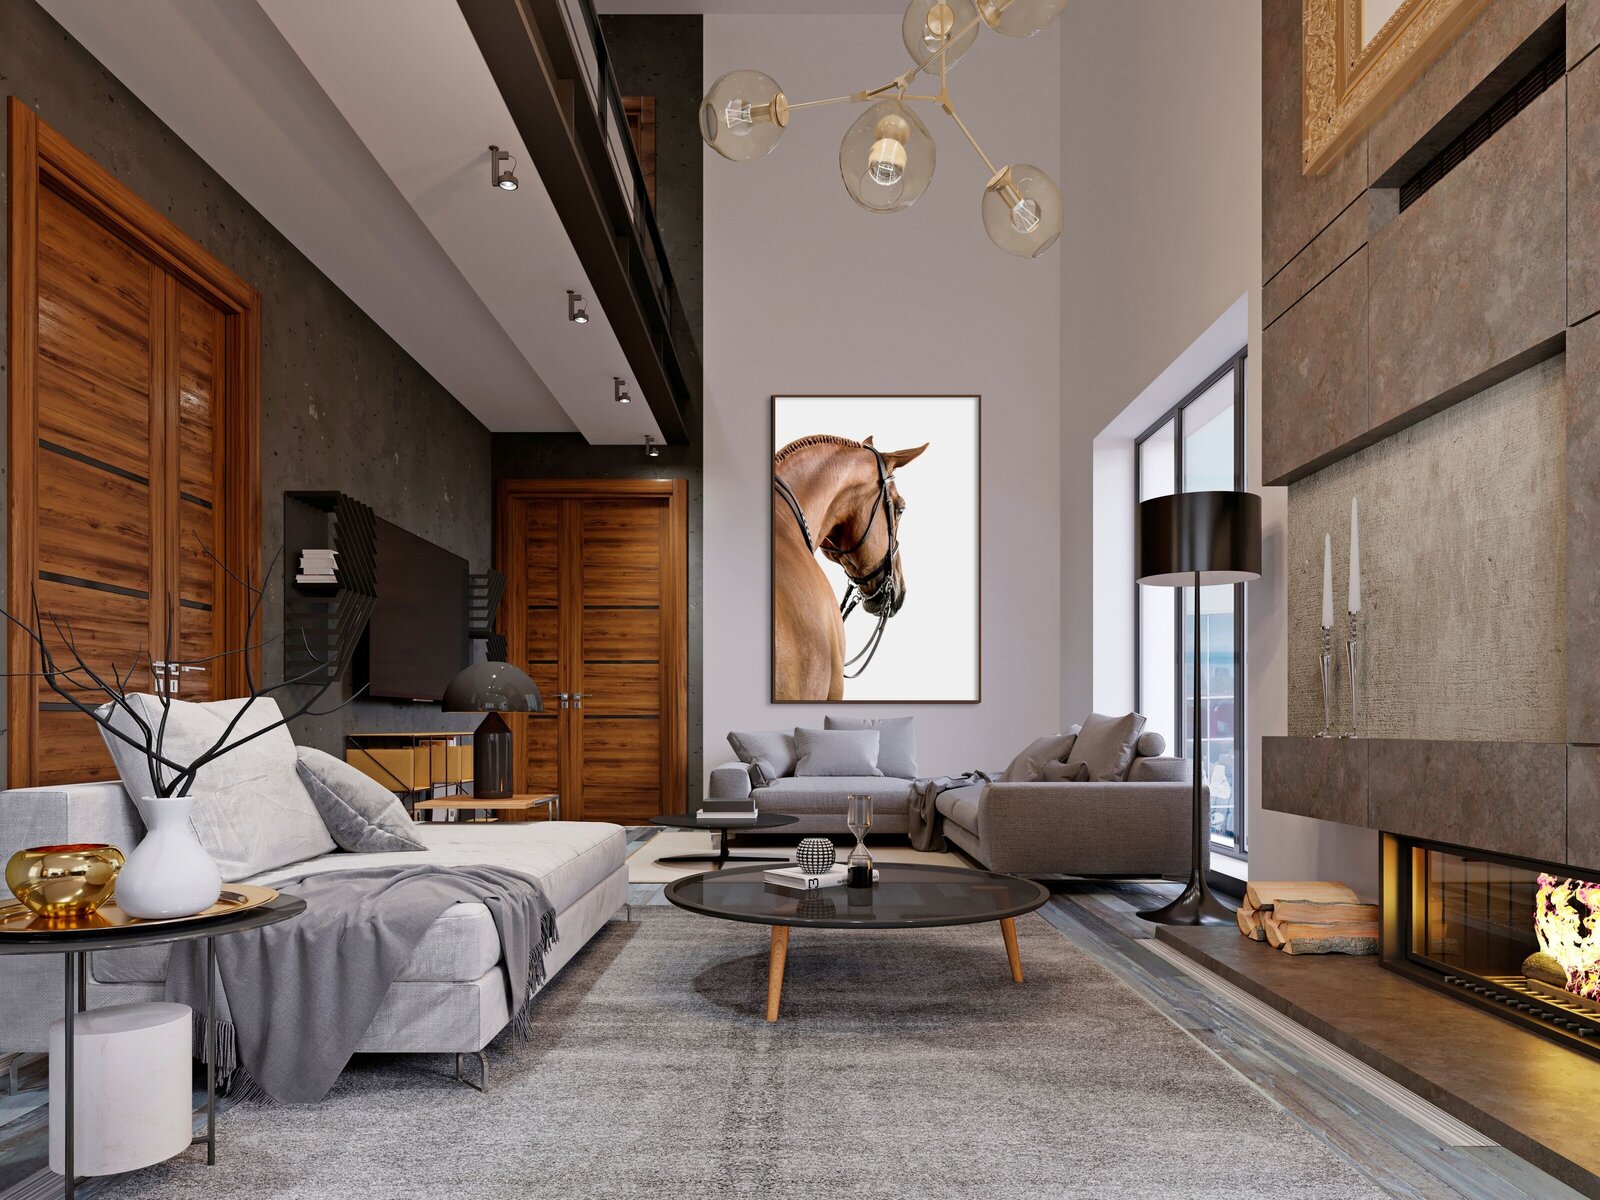 Chestnut Horse In Luxury Living Room